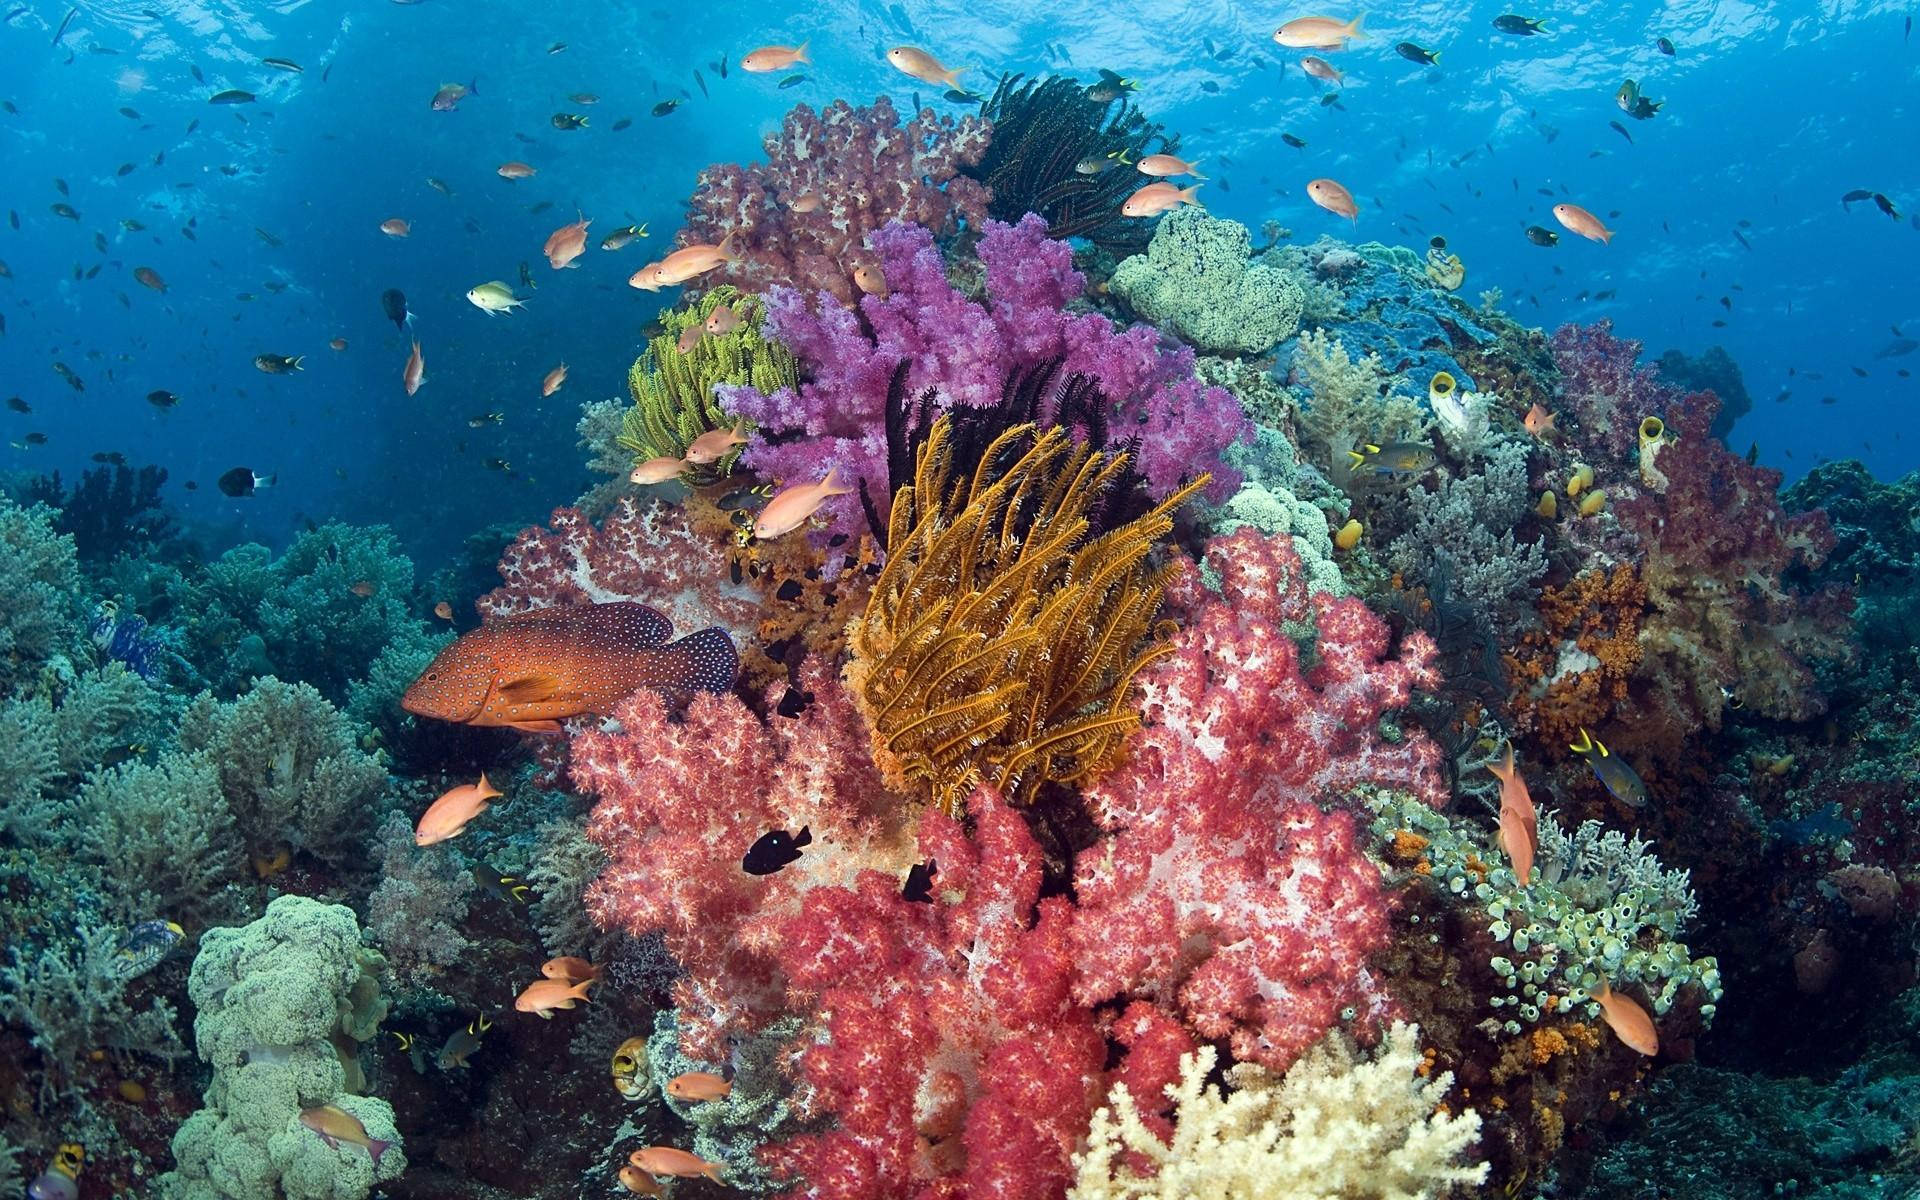 Aquatic Corals In Seafloor Wallpaper